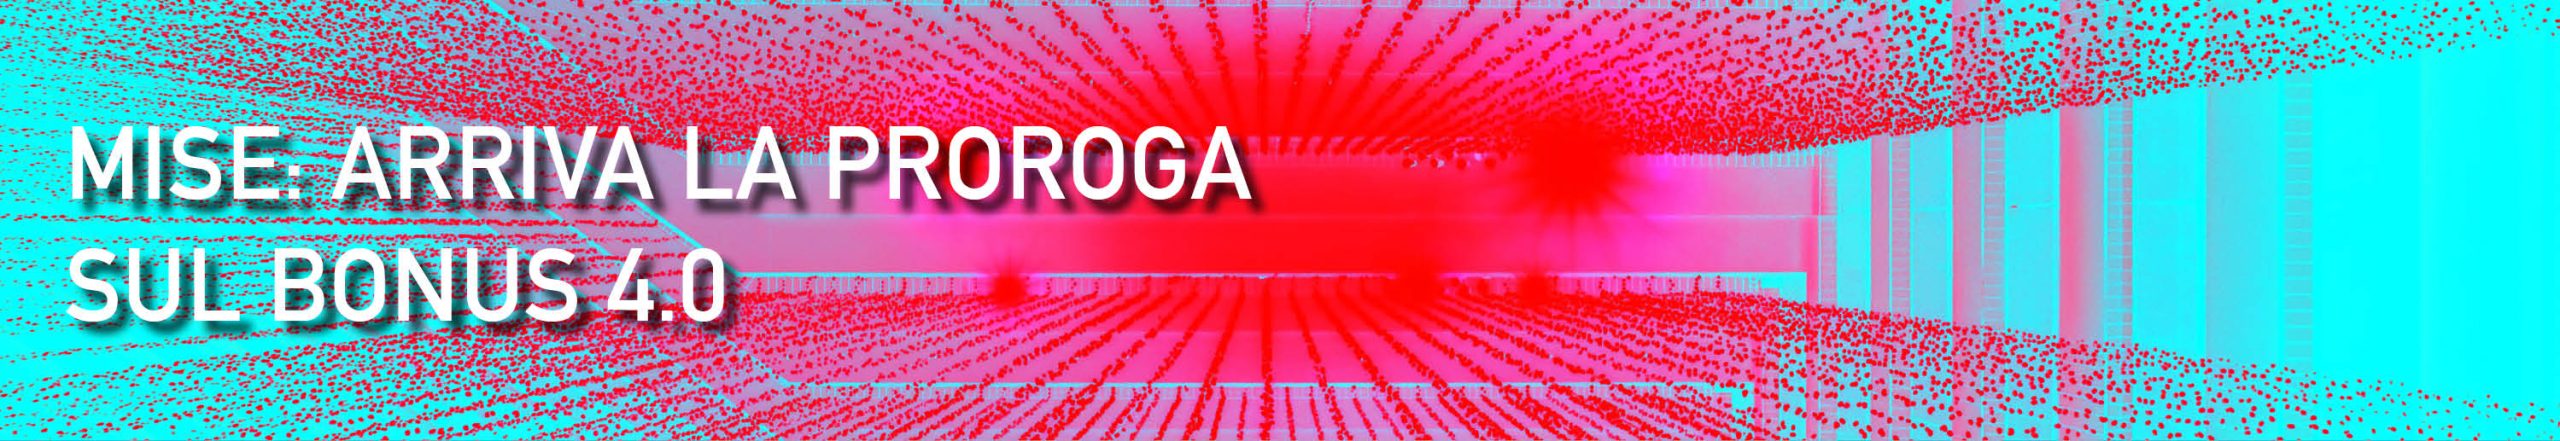 PROROGA-BONUS4.0-2022